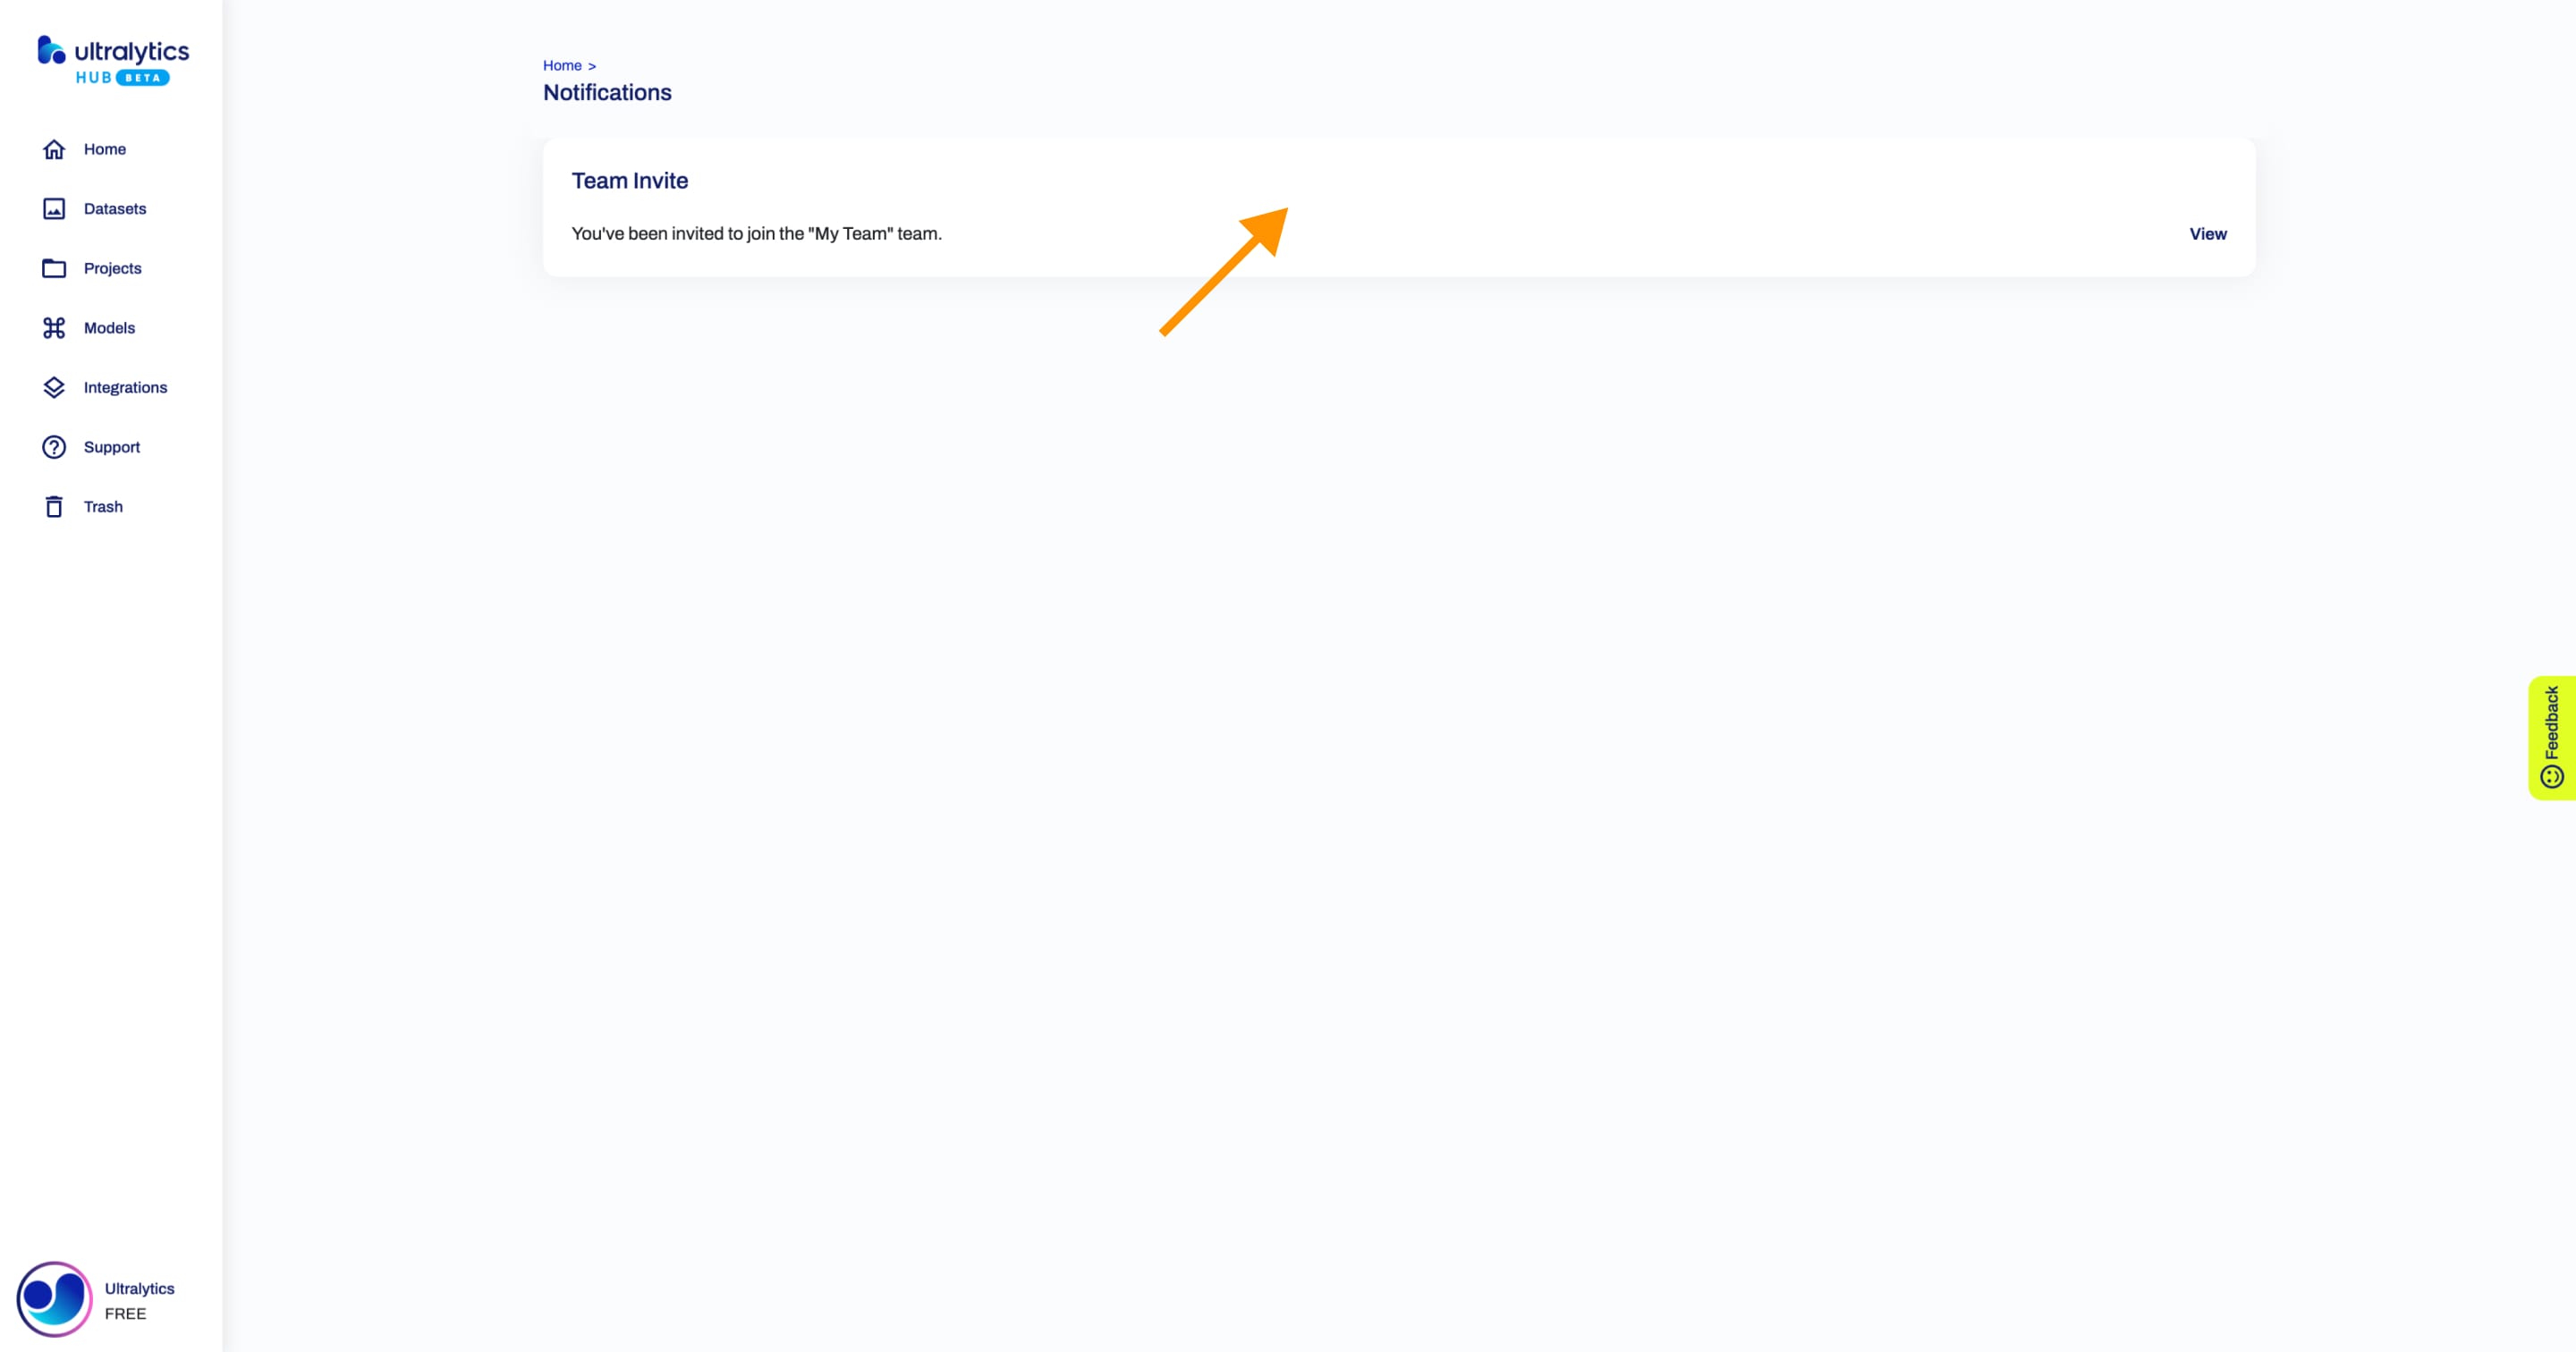 Ultralytics Captura de pantalla HUB de la página Notificaciones con una flecha apuntando a una de las notificaciones